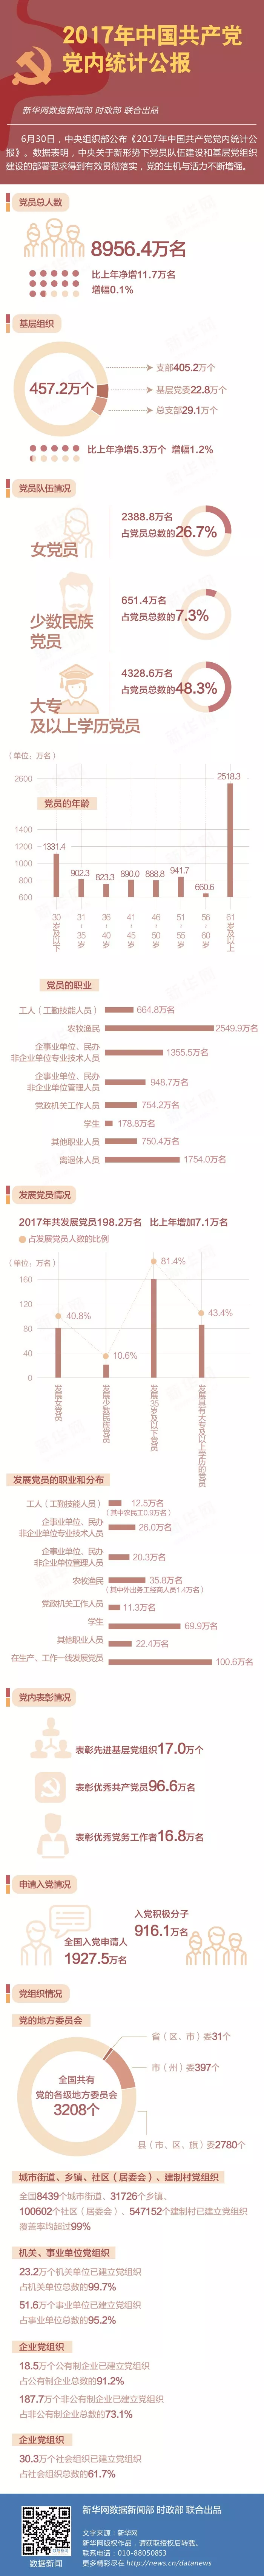 一图读懂！2017年中国共产党党内统计公报